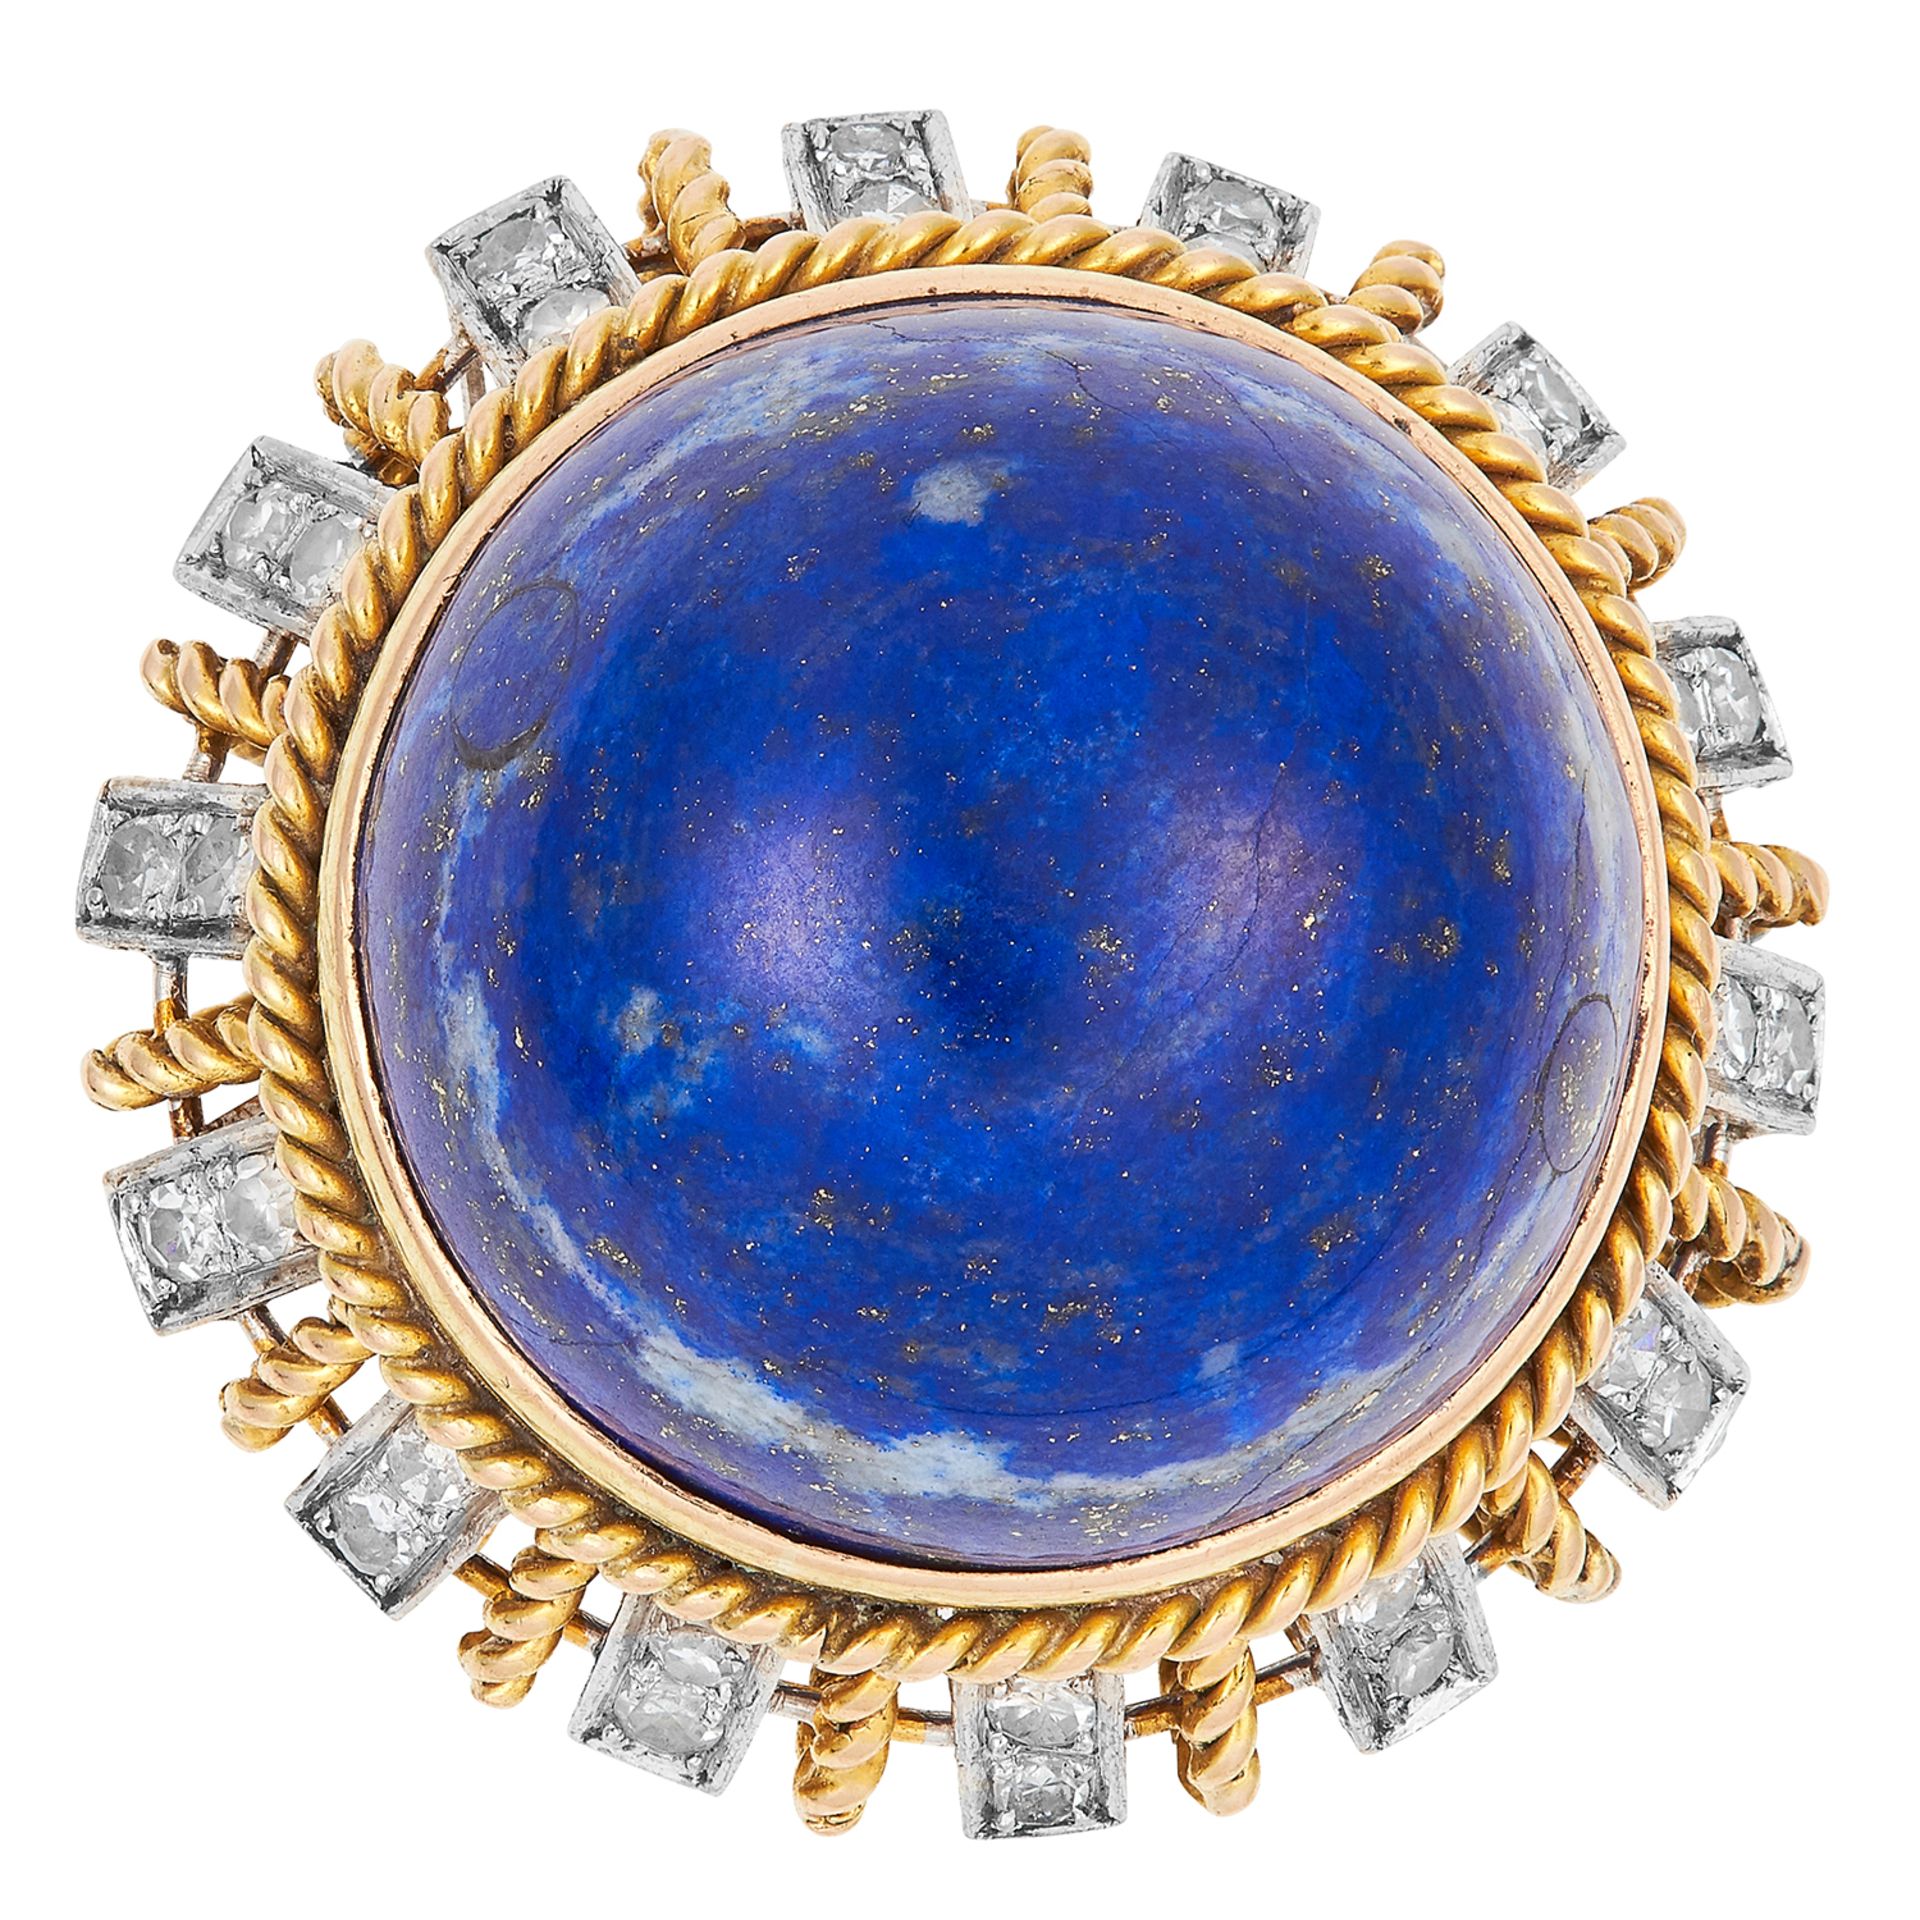 VINTAGE LAPIS LAZULI AND DIAMOND RING set with a circular lapis lazuli cabochon of 29.69 carats